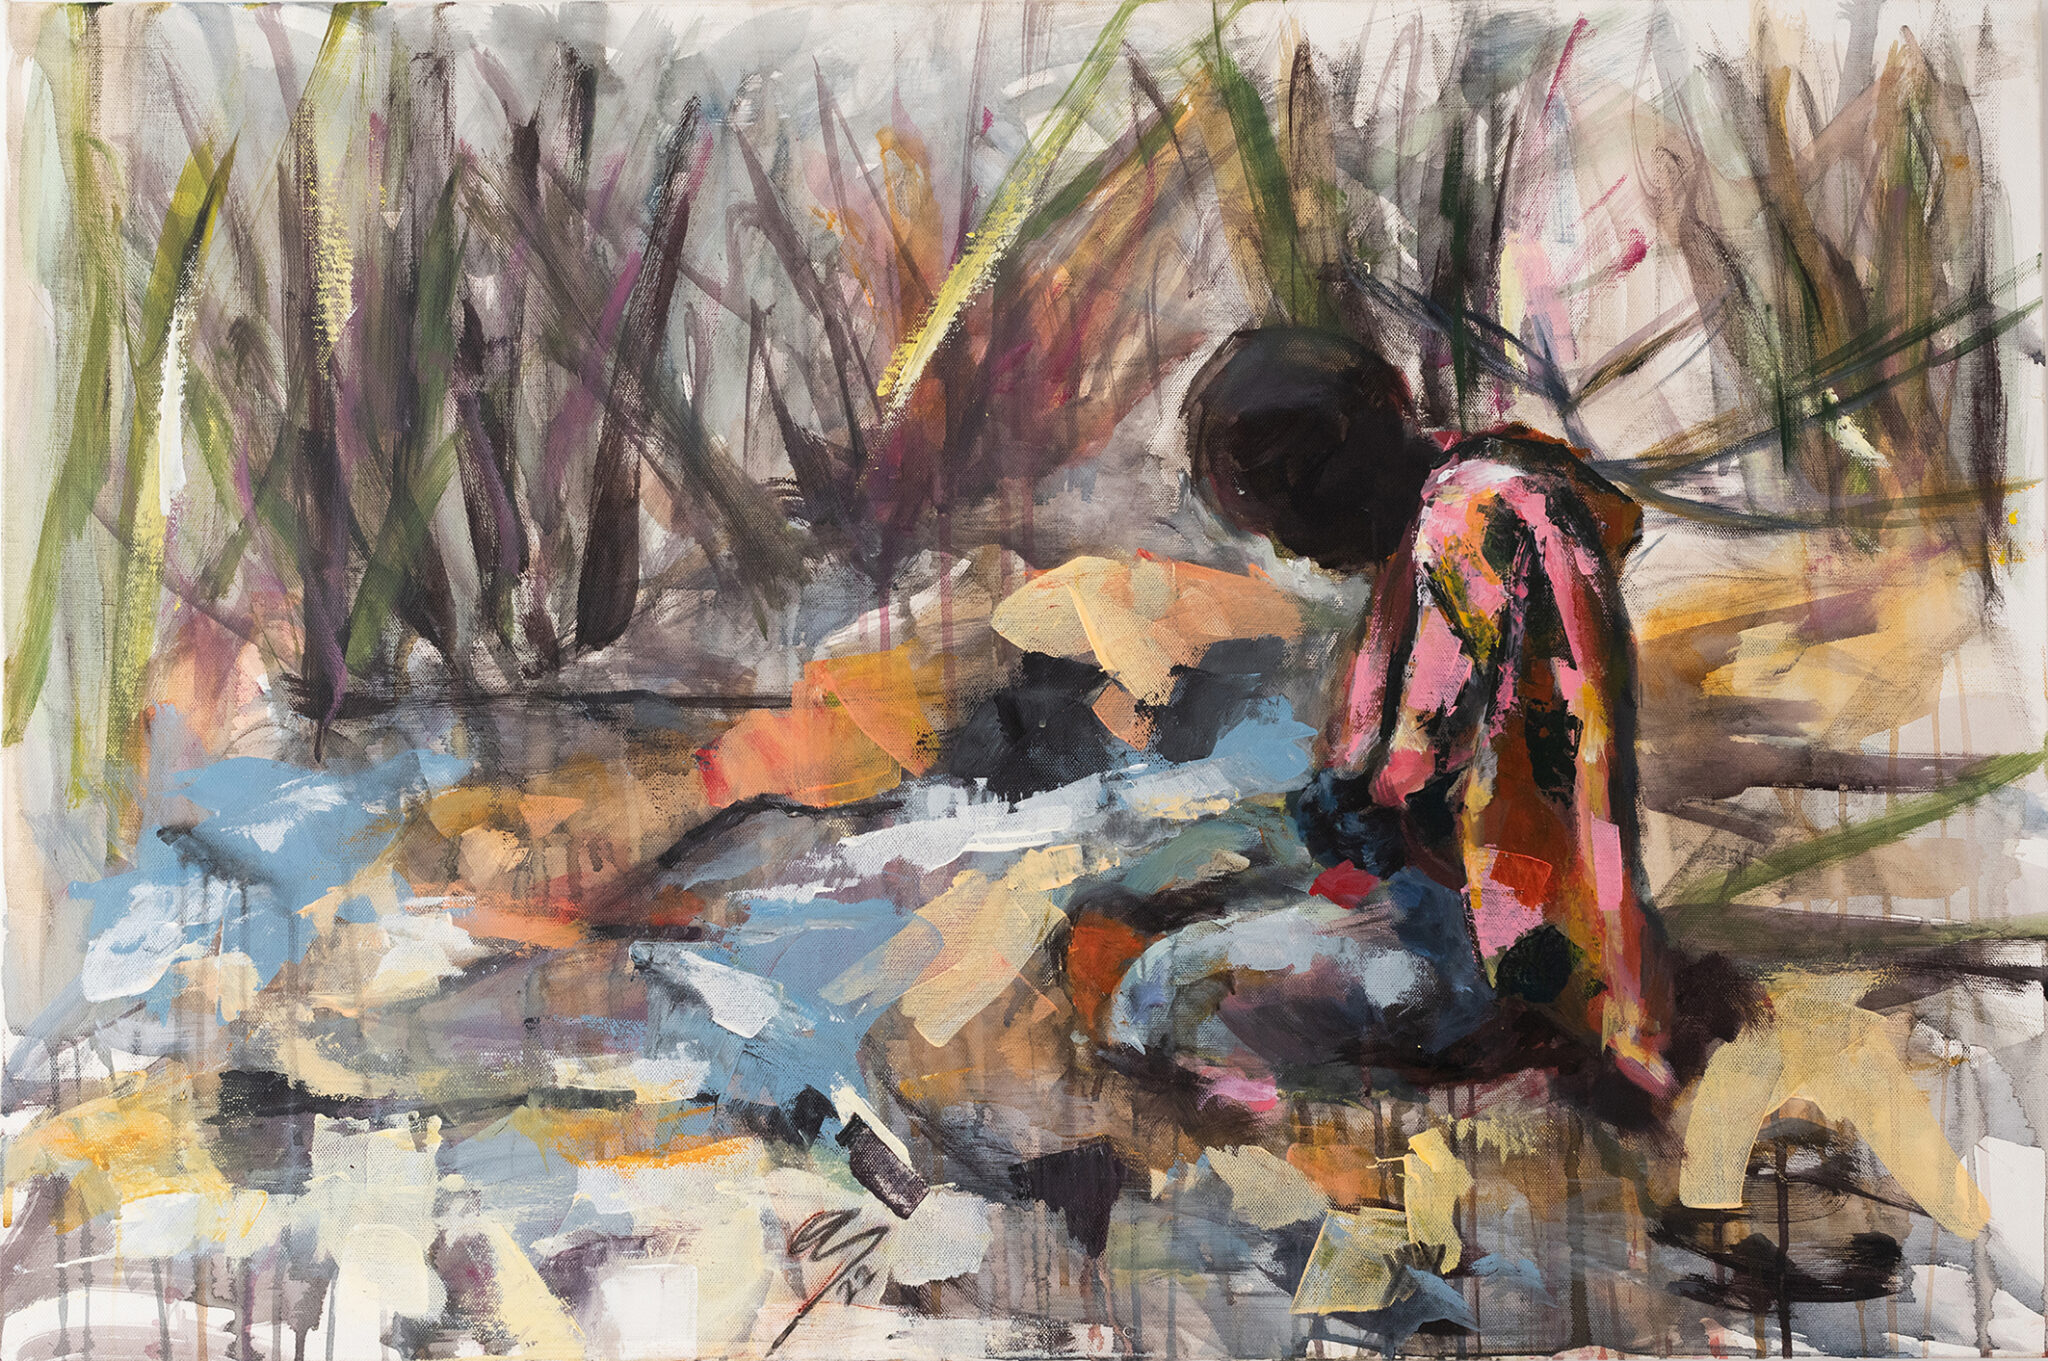 Περιπλανώμενη: Έκθεση ζωγραφικής της Ανθούλας Σημαδιακού